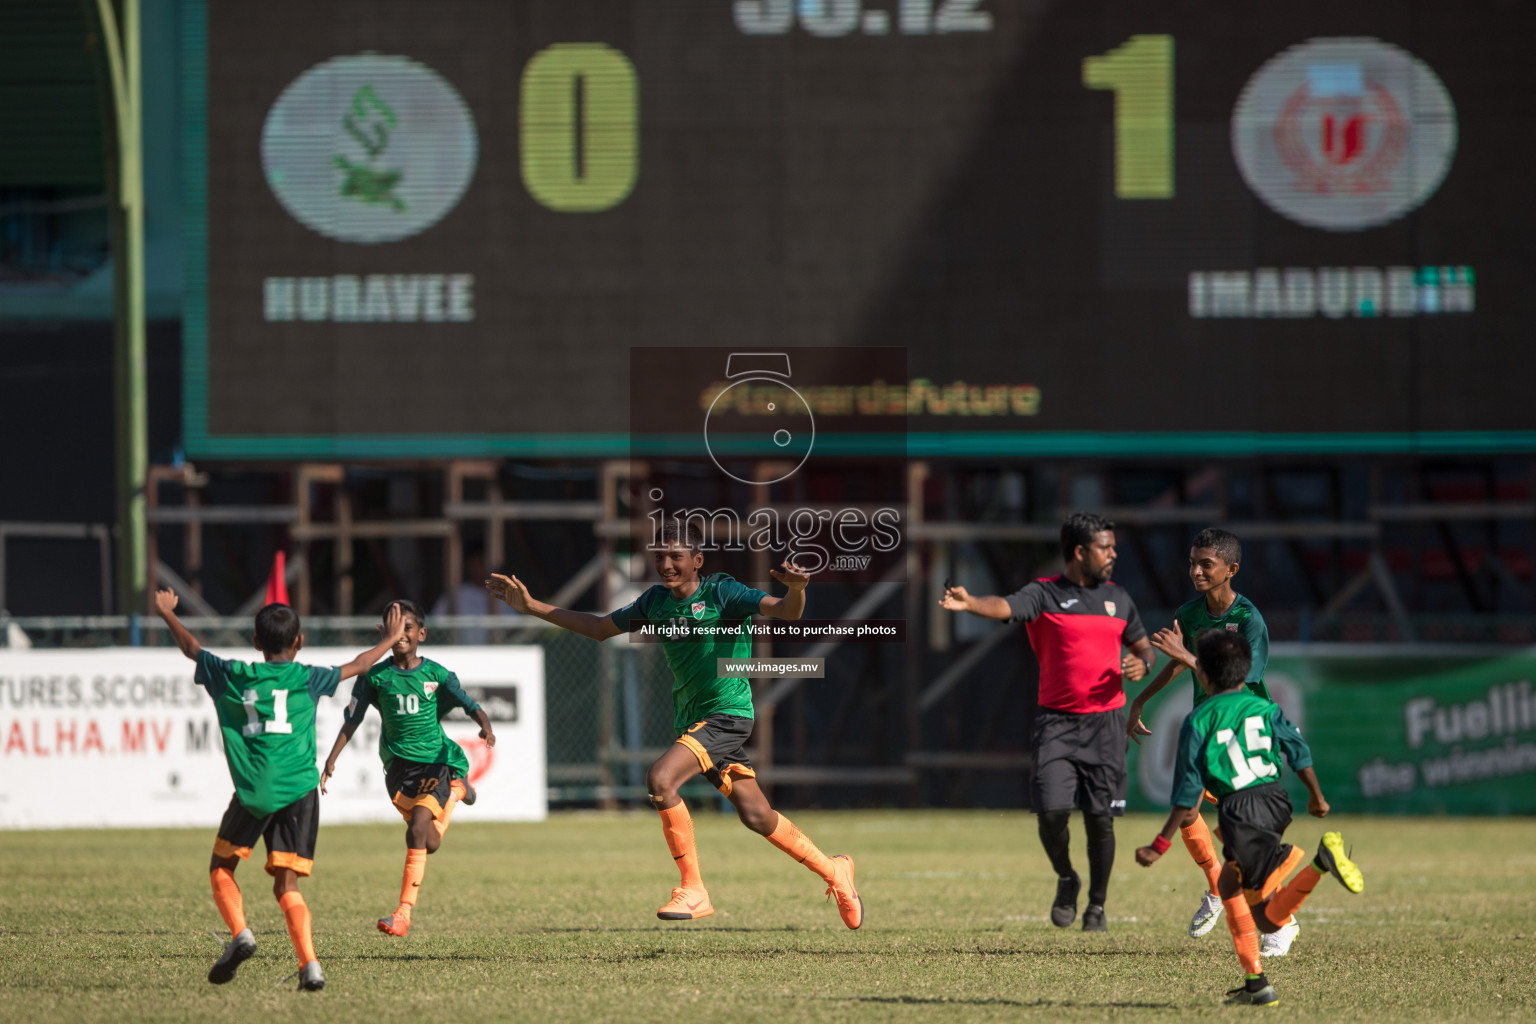 Imaduddin School vs Huravi School in MAMEN Inter School Football Tournament 2019 (U13) in Male, Maldives on 27th March 2019, Photos: Suadh Abdul Sattar / images.mv